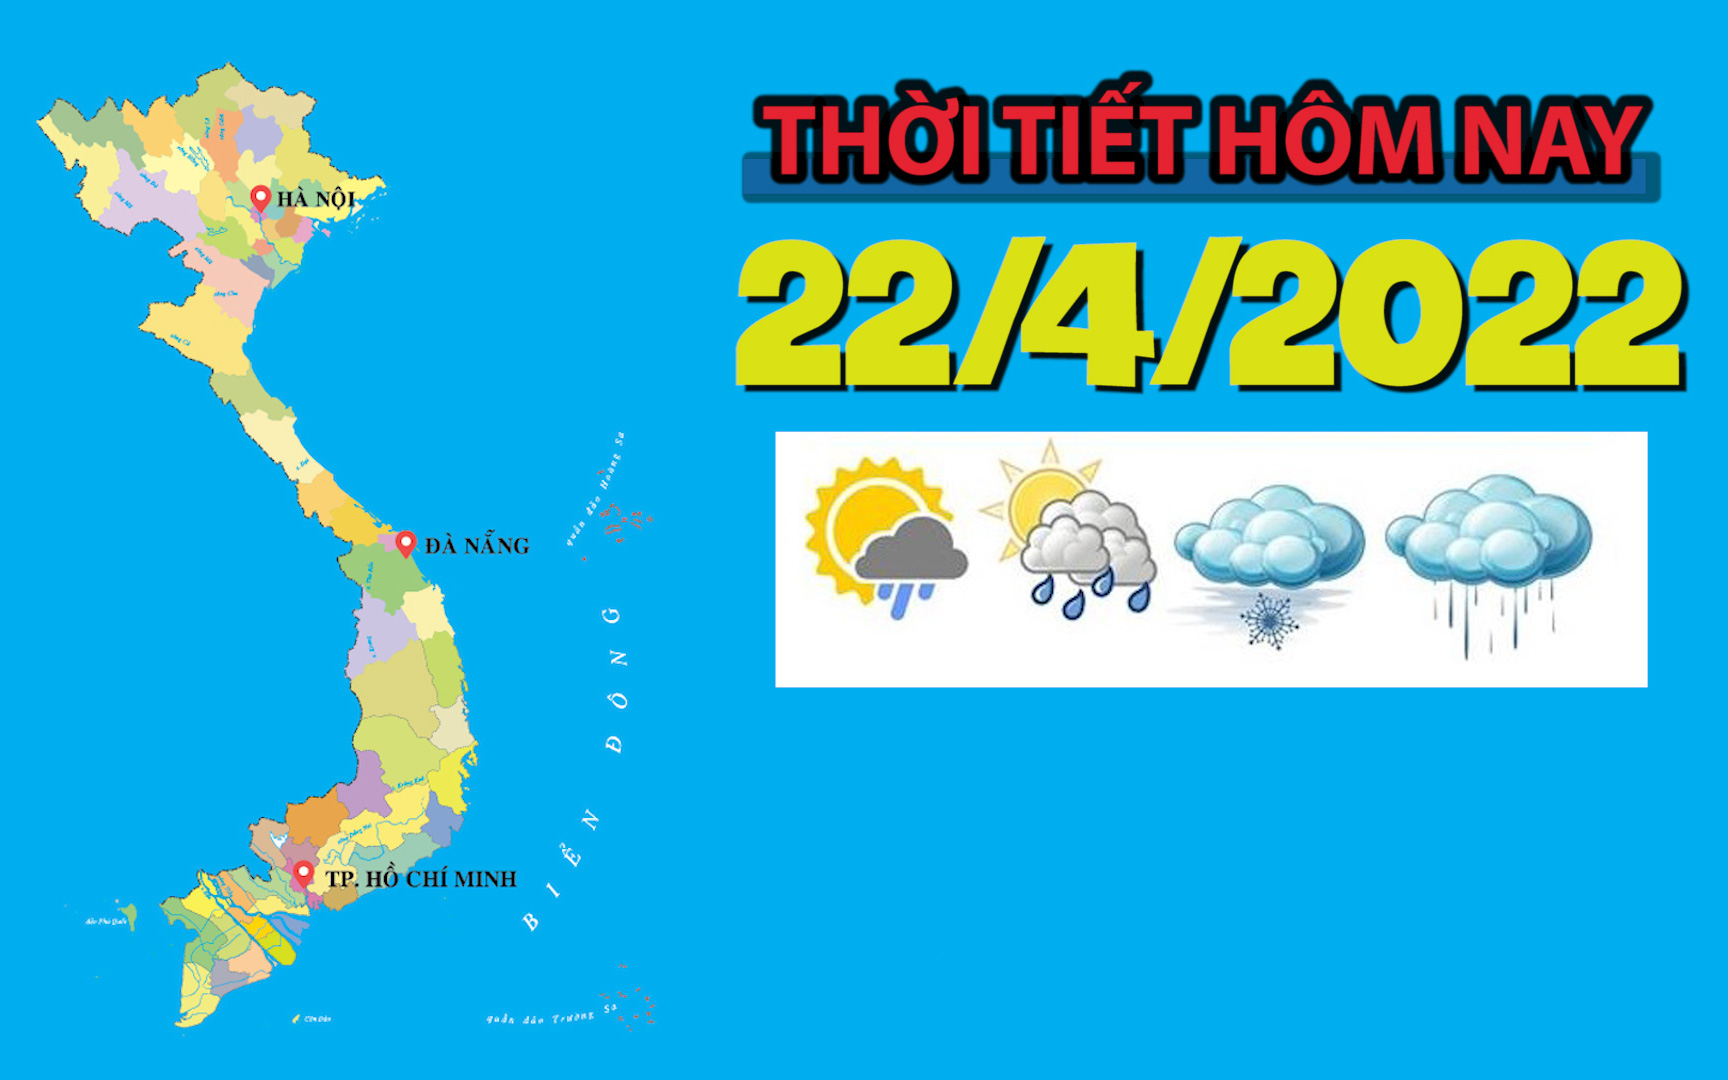 Thời tiết hôm nay 22/4/2022: Hà Nội ngày nắng nóng, nhiệt độ cao nhất 30 độ C